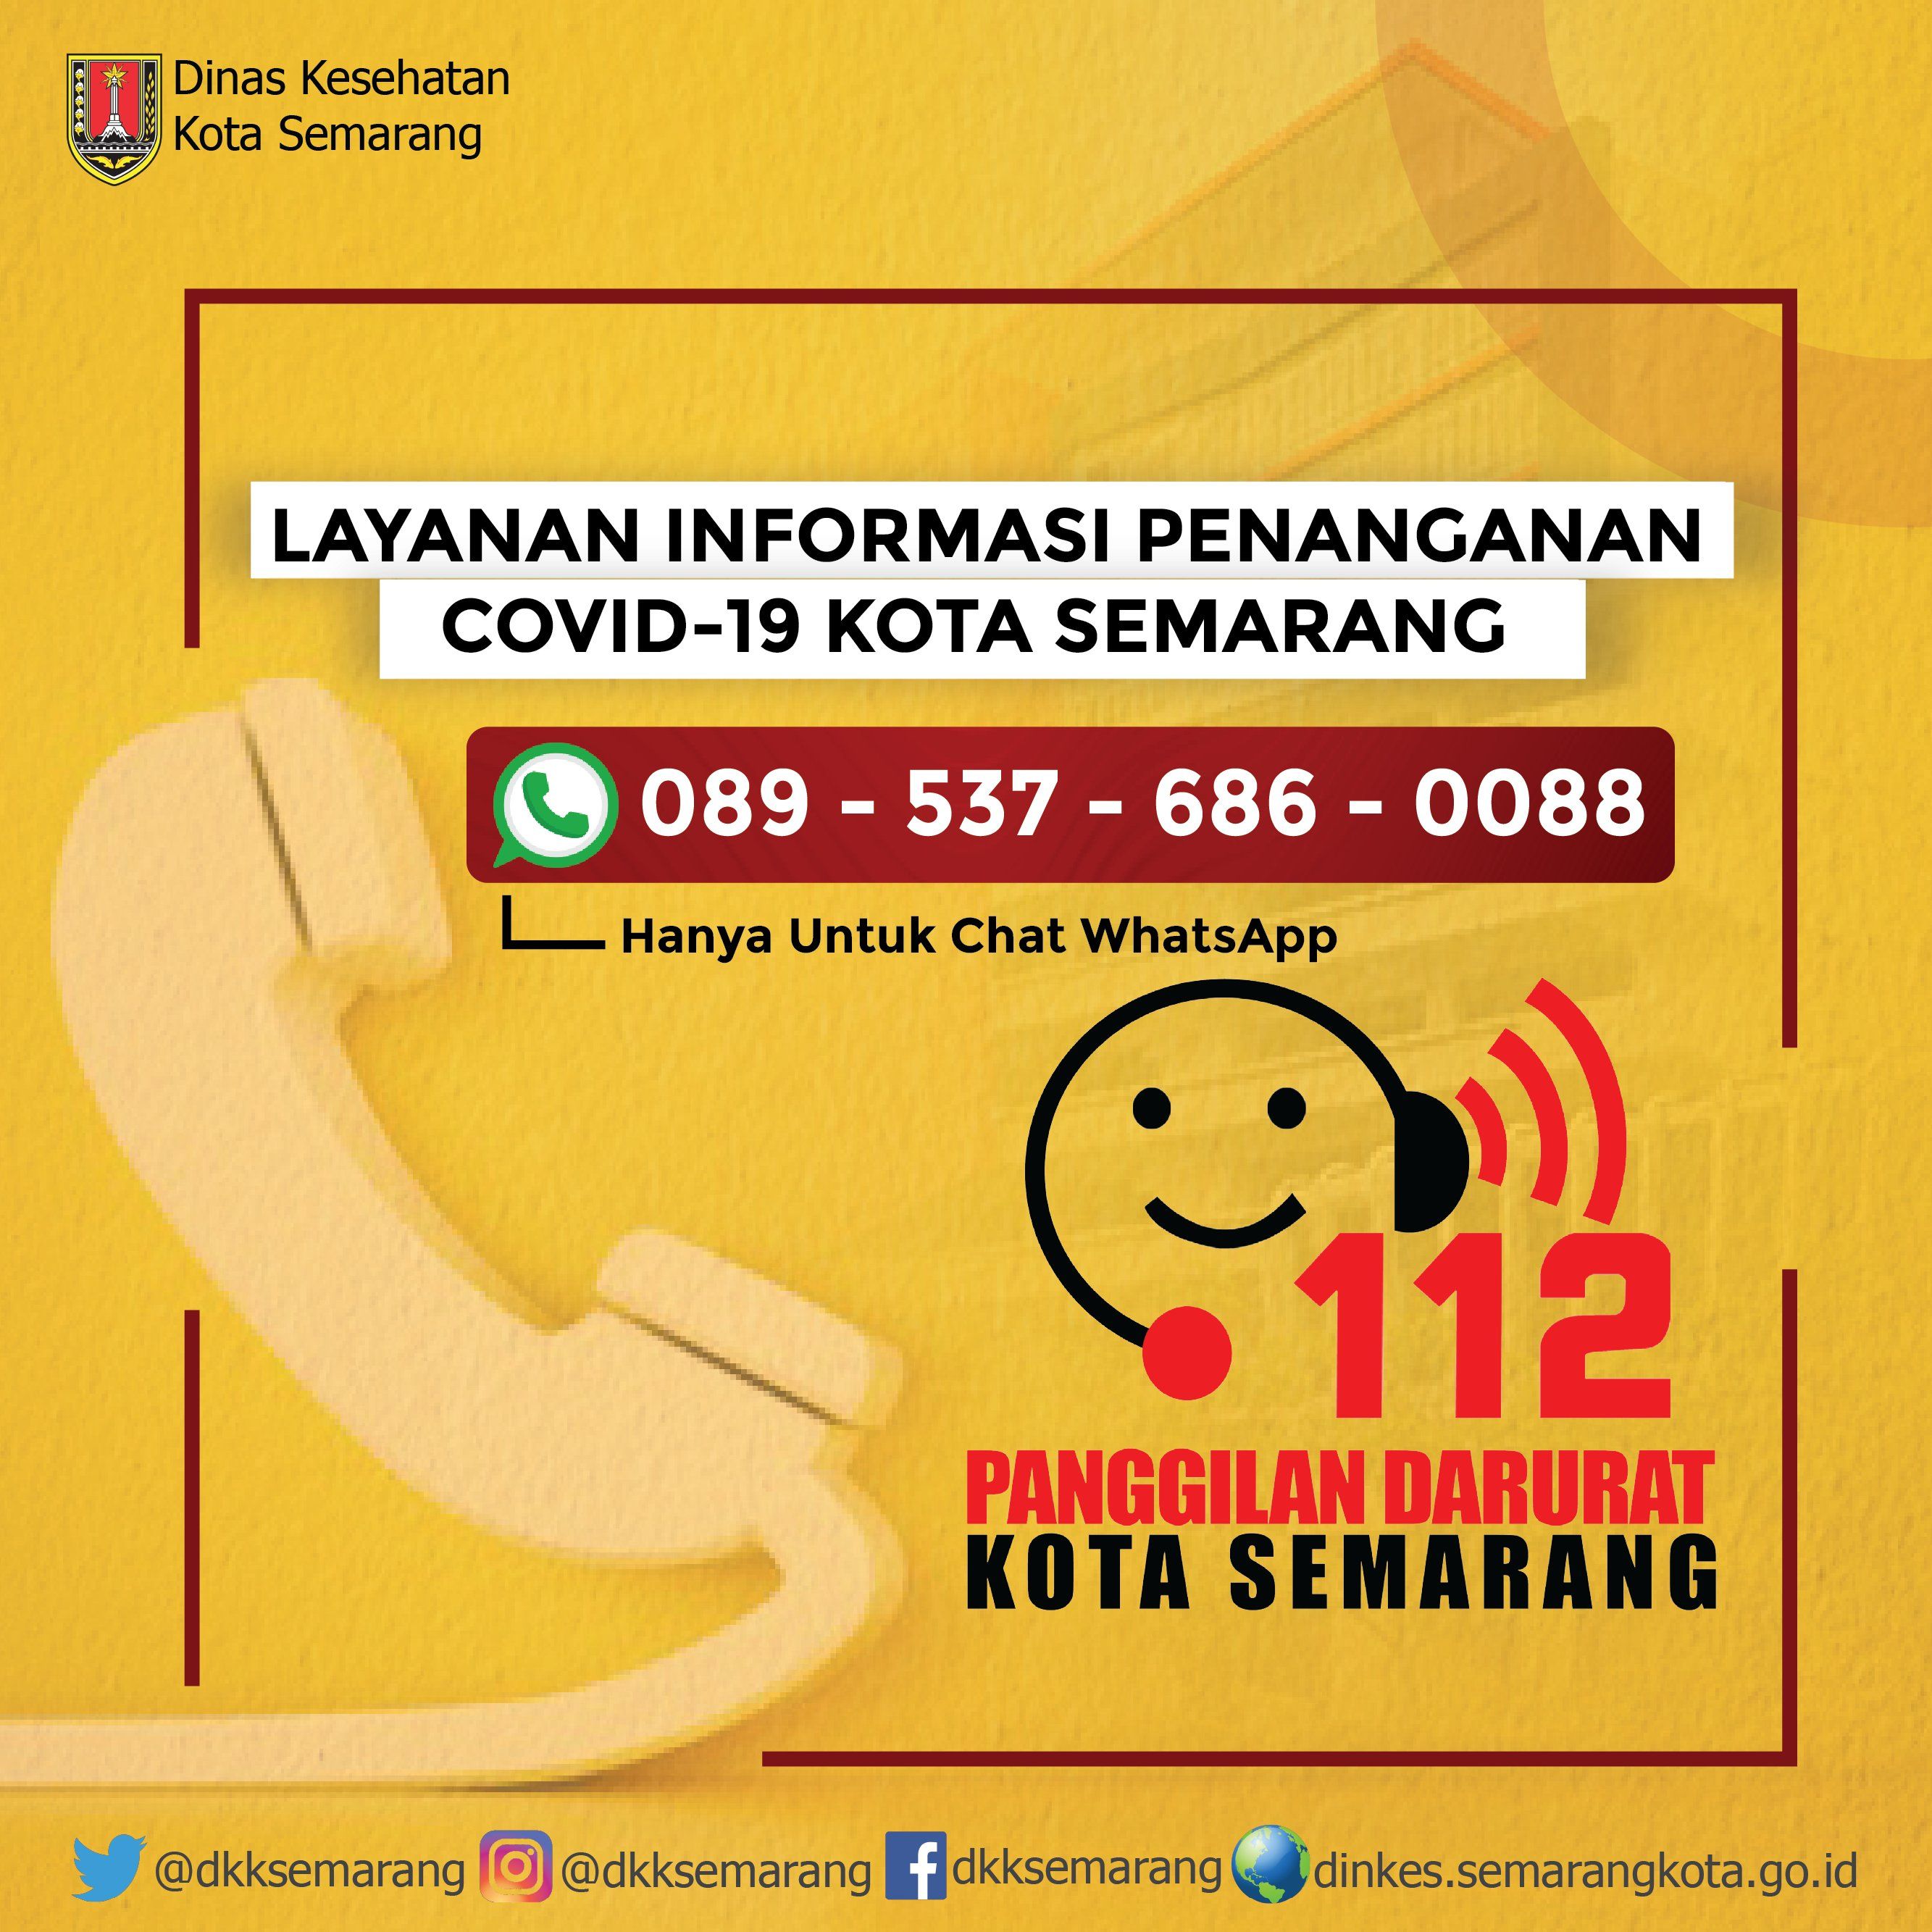 Informasi layanan Covid-19 Dinas Kesehatan Kota Semarang